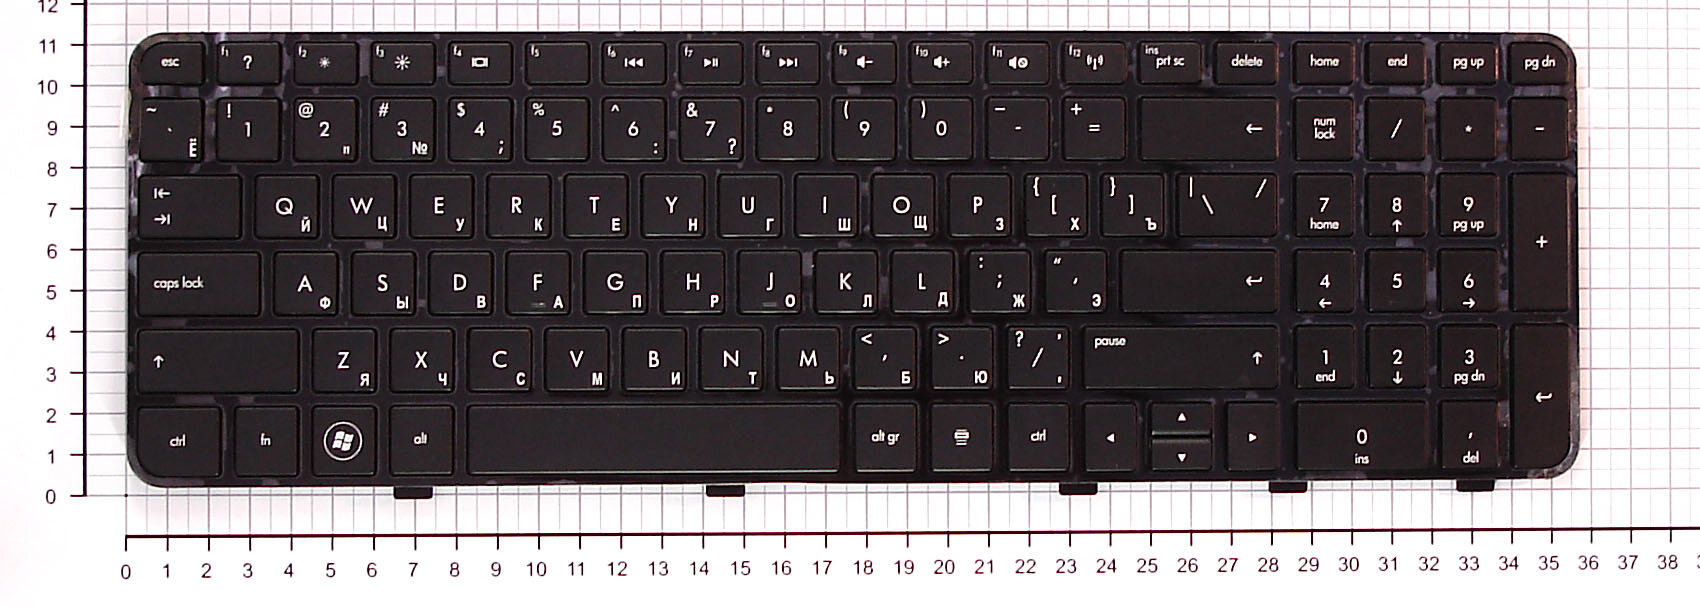 Клавиатура для ноутбука HP Pavilion dv6-6000 черная с рамкой